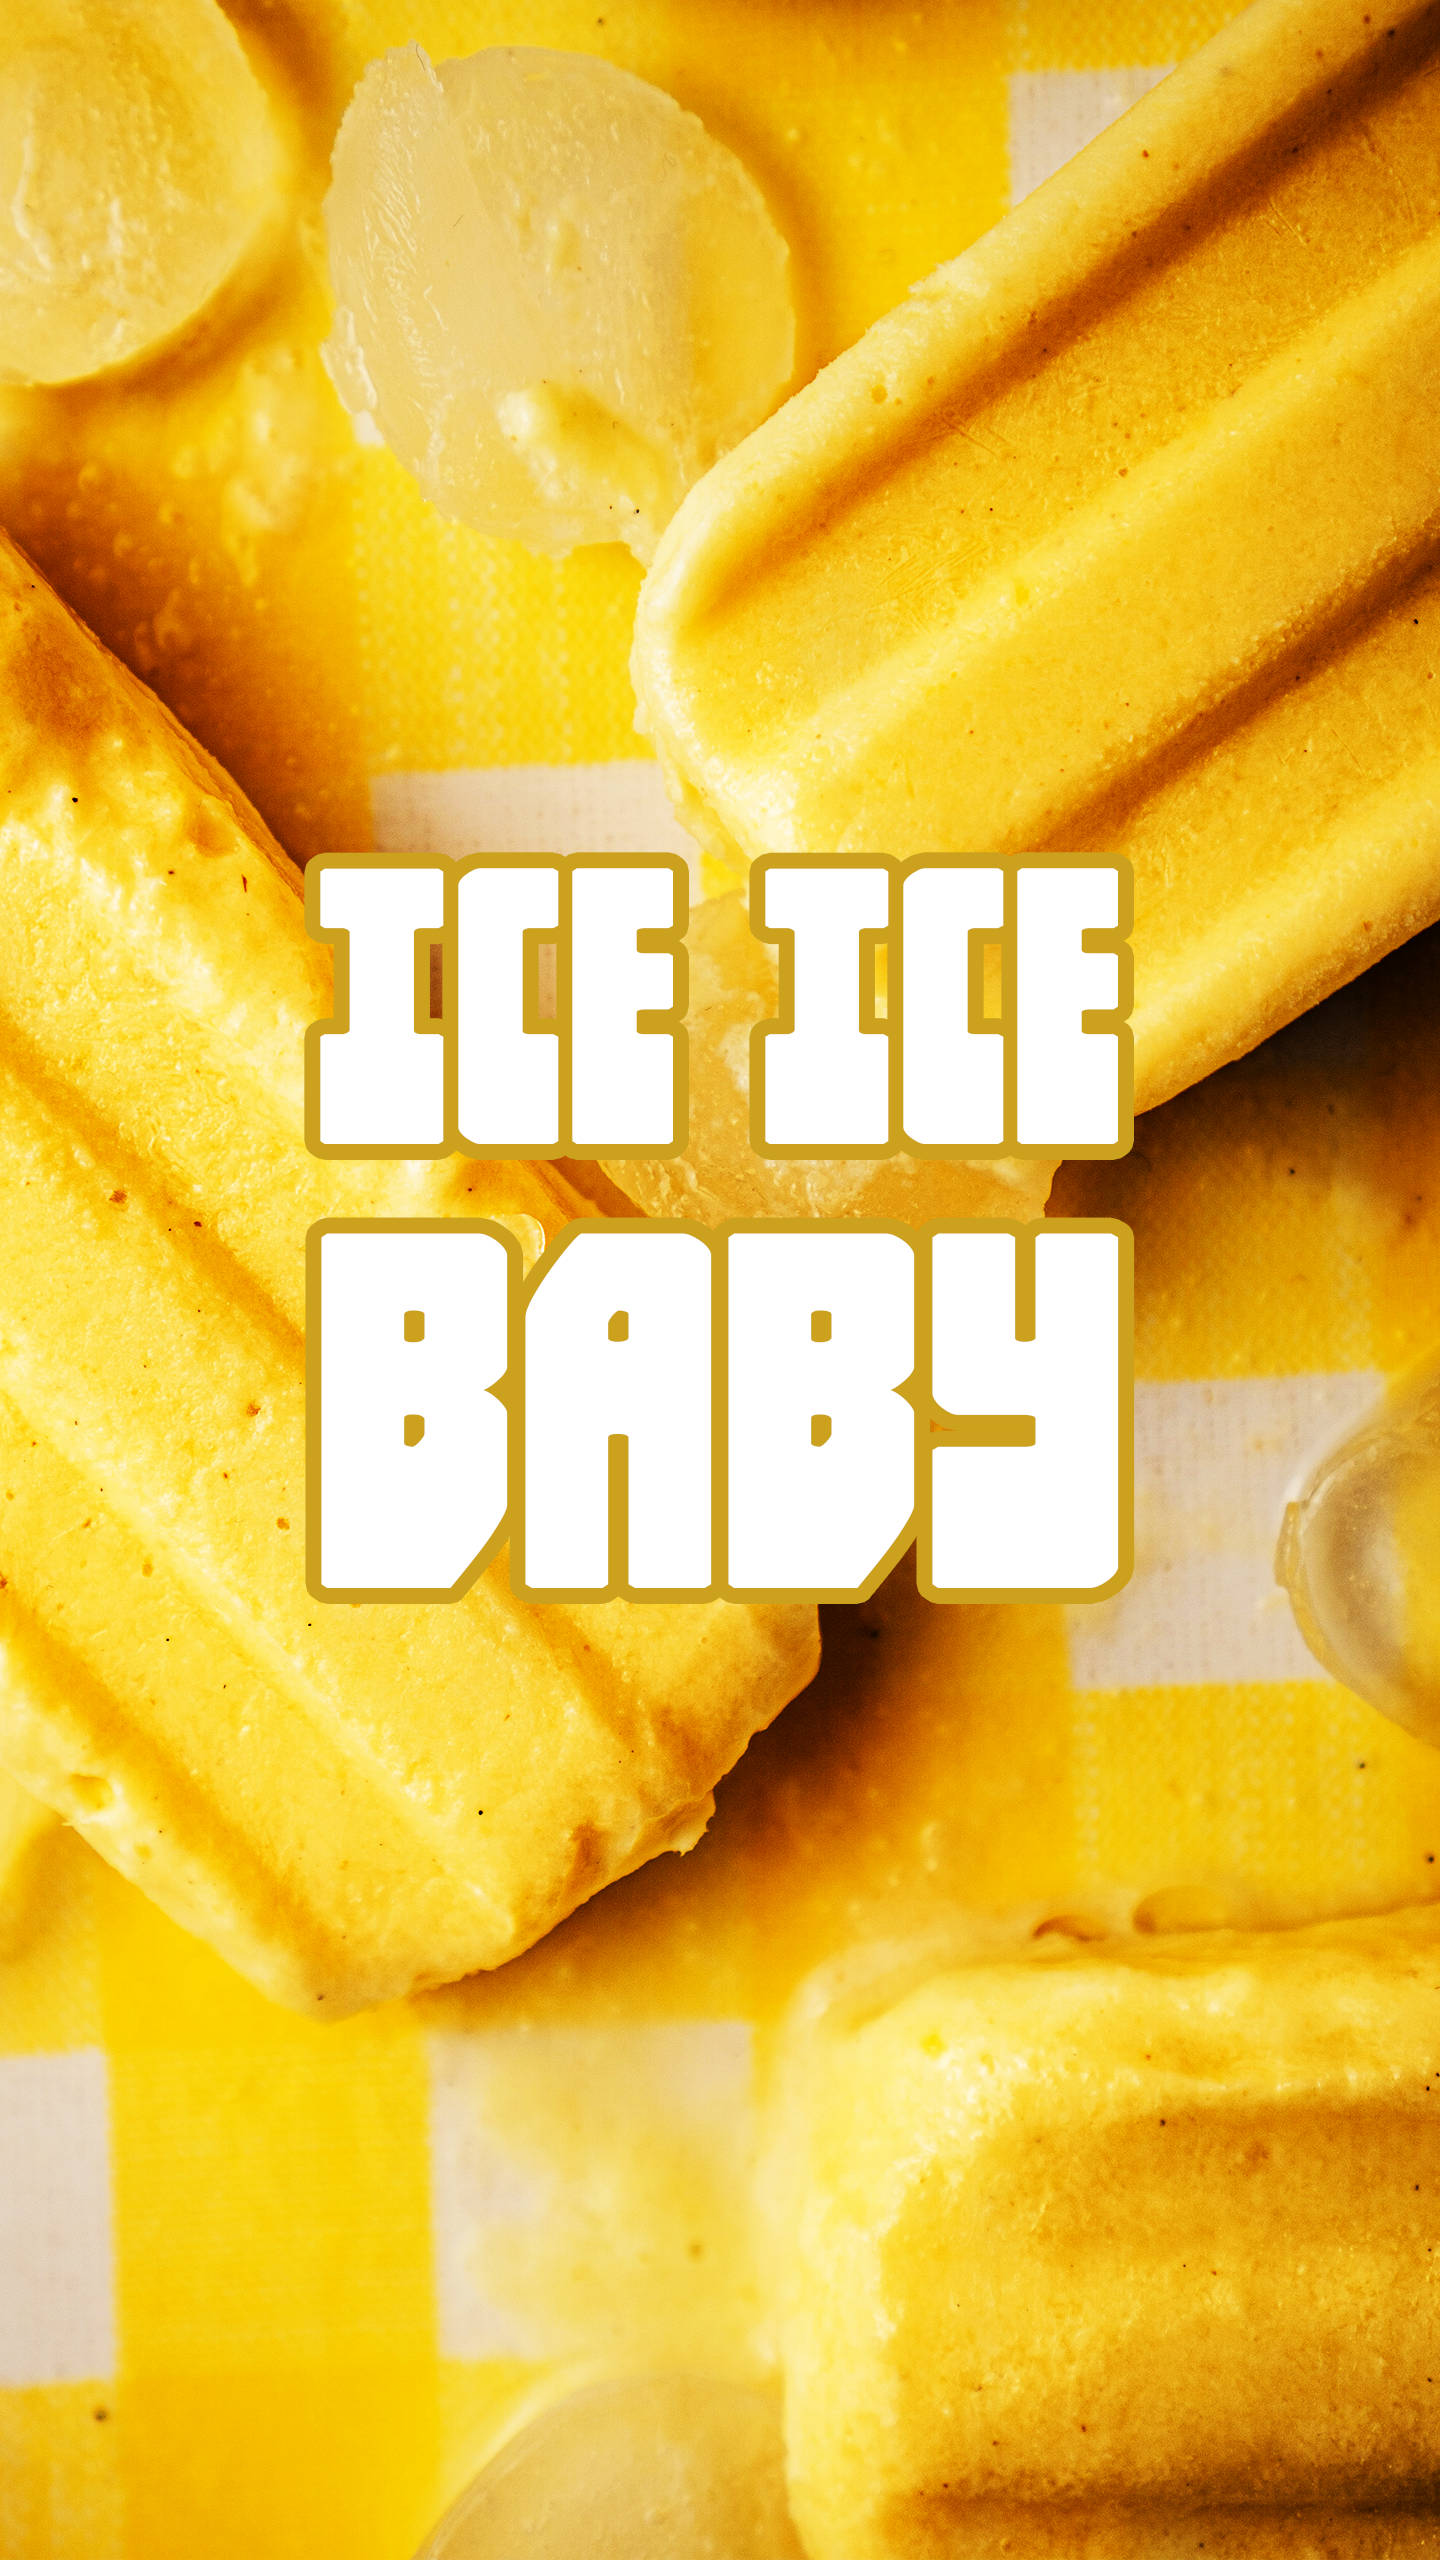 Är Ice Ice Baby 80s Retro Vintage Din Favorit Bakgrundsbild För Din Dator Eller Mobiltelefon? Wallpaper